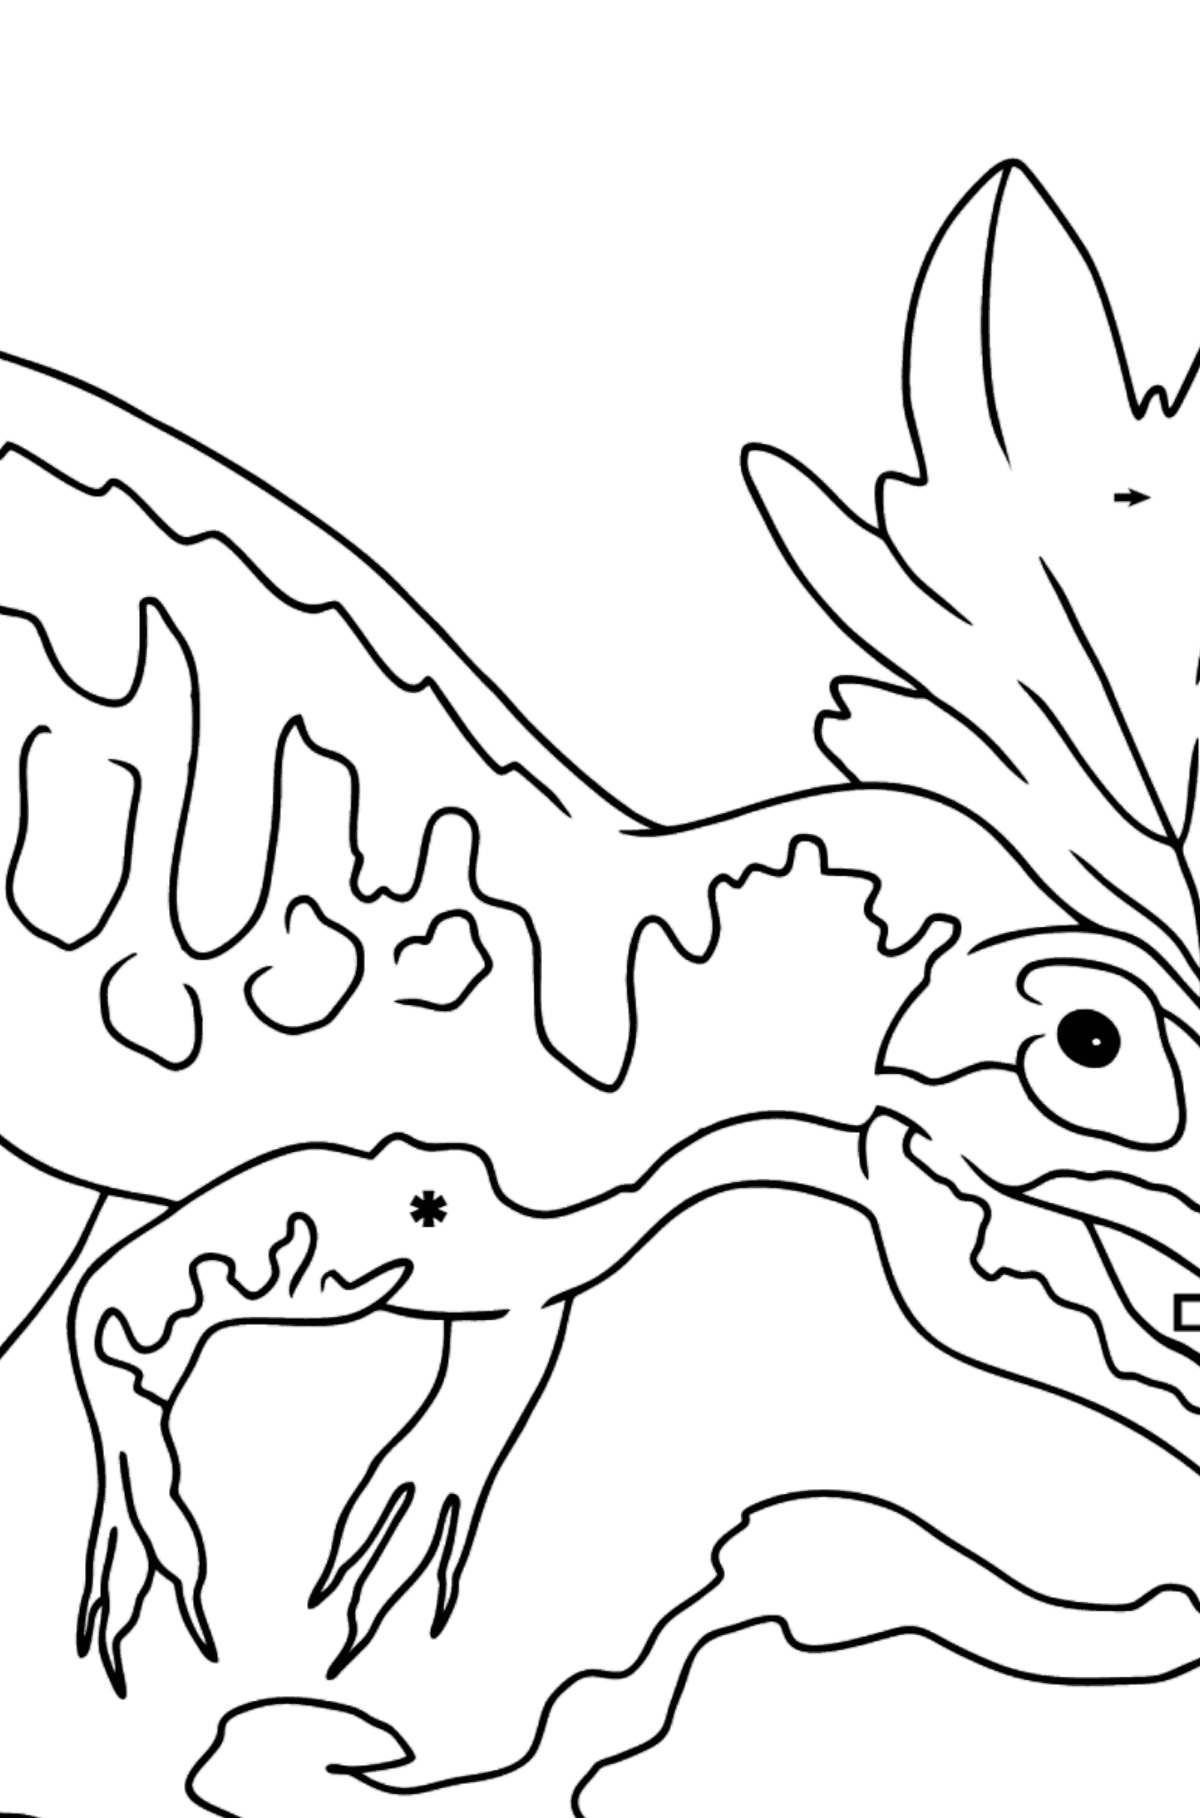 Tegning til fargelegging allosaurus (enkelt) - Fargelegge etter symboler for barn